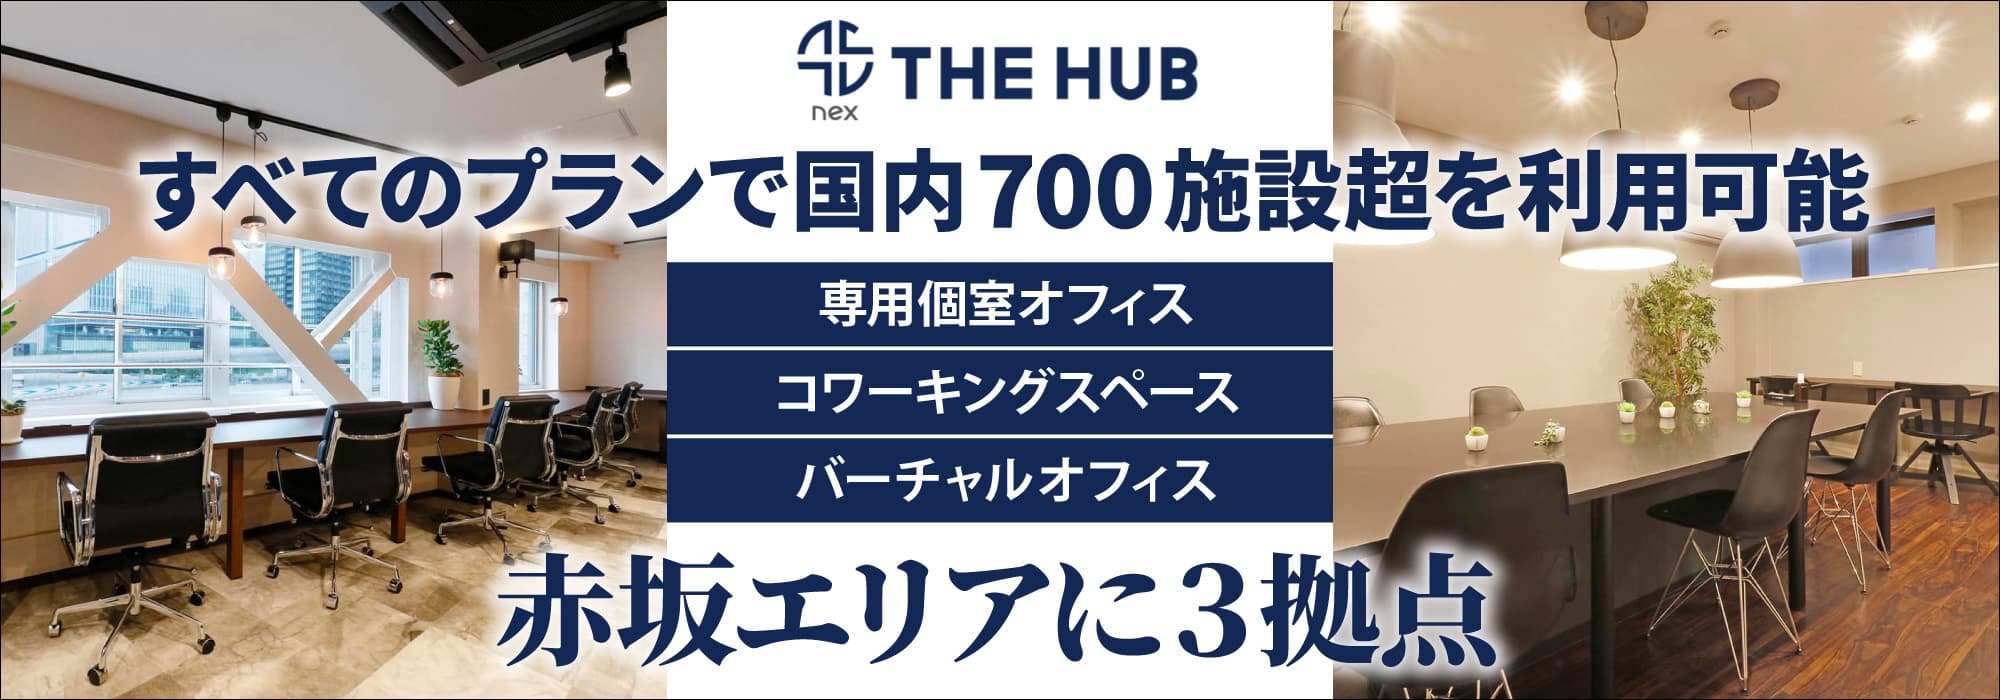 赤坂エリアに３拠点、創造力と生産性を刺激するレンタルオフィス【THE HUB】すべてのプランで国内700施設超を利用可能